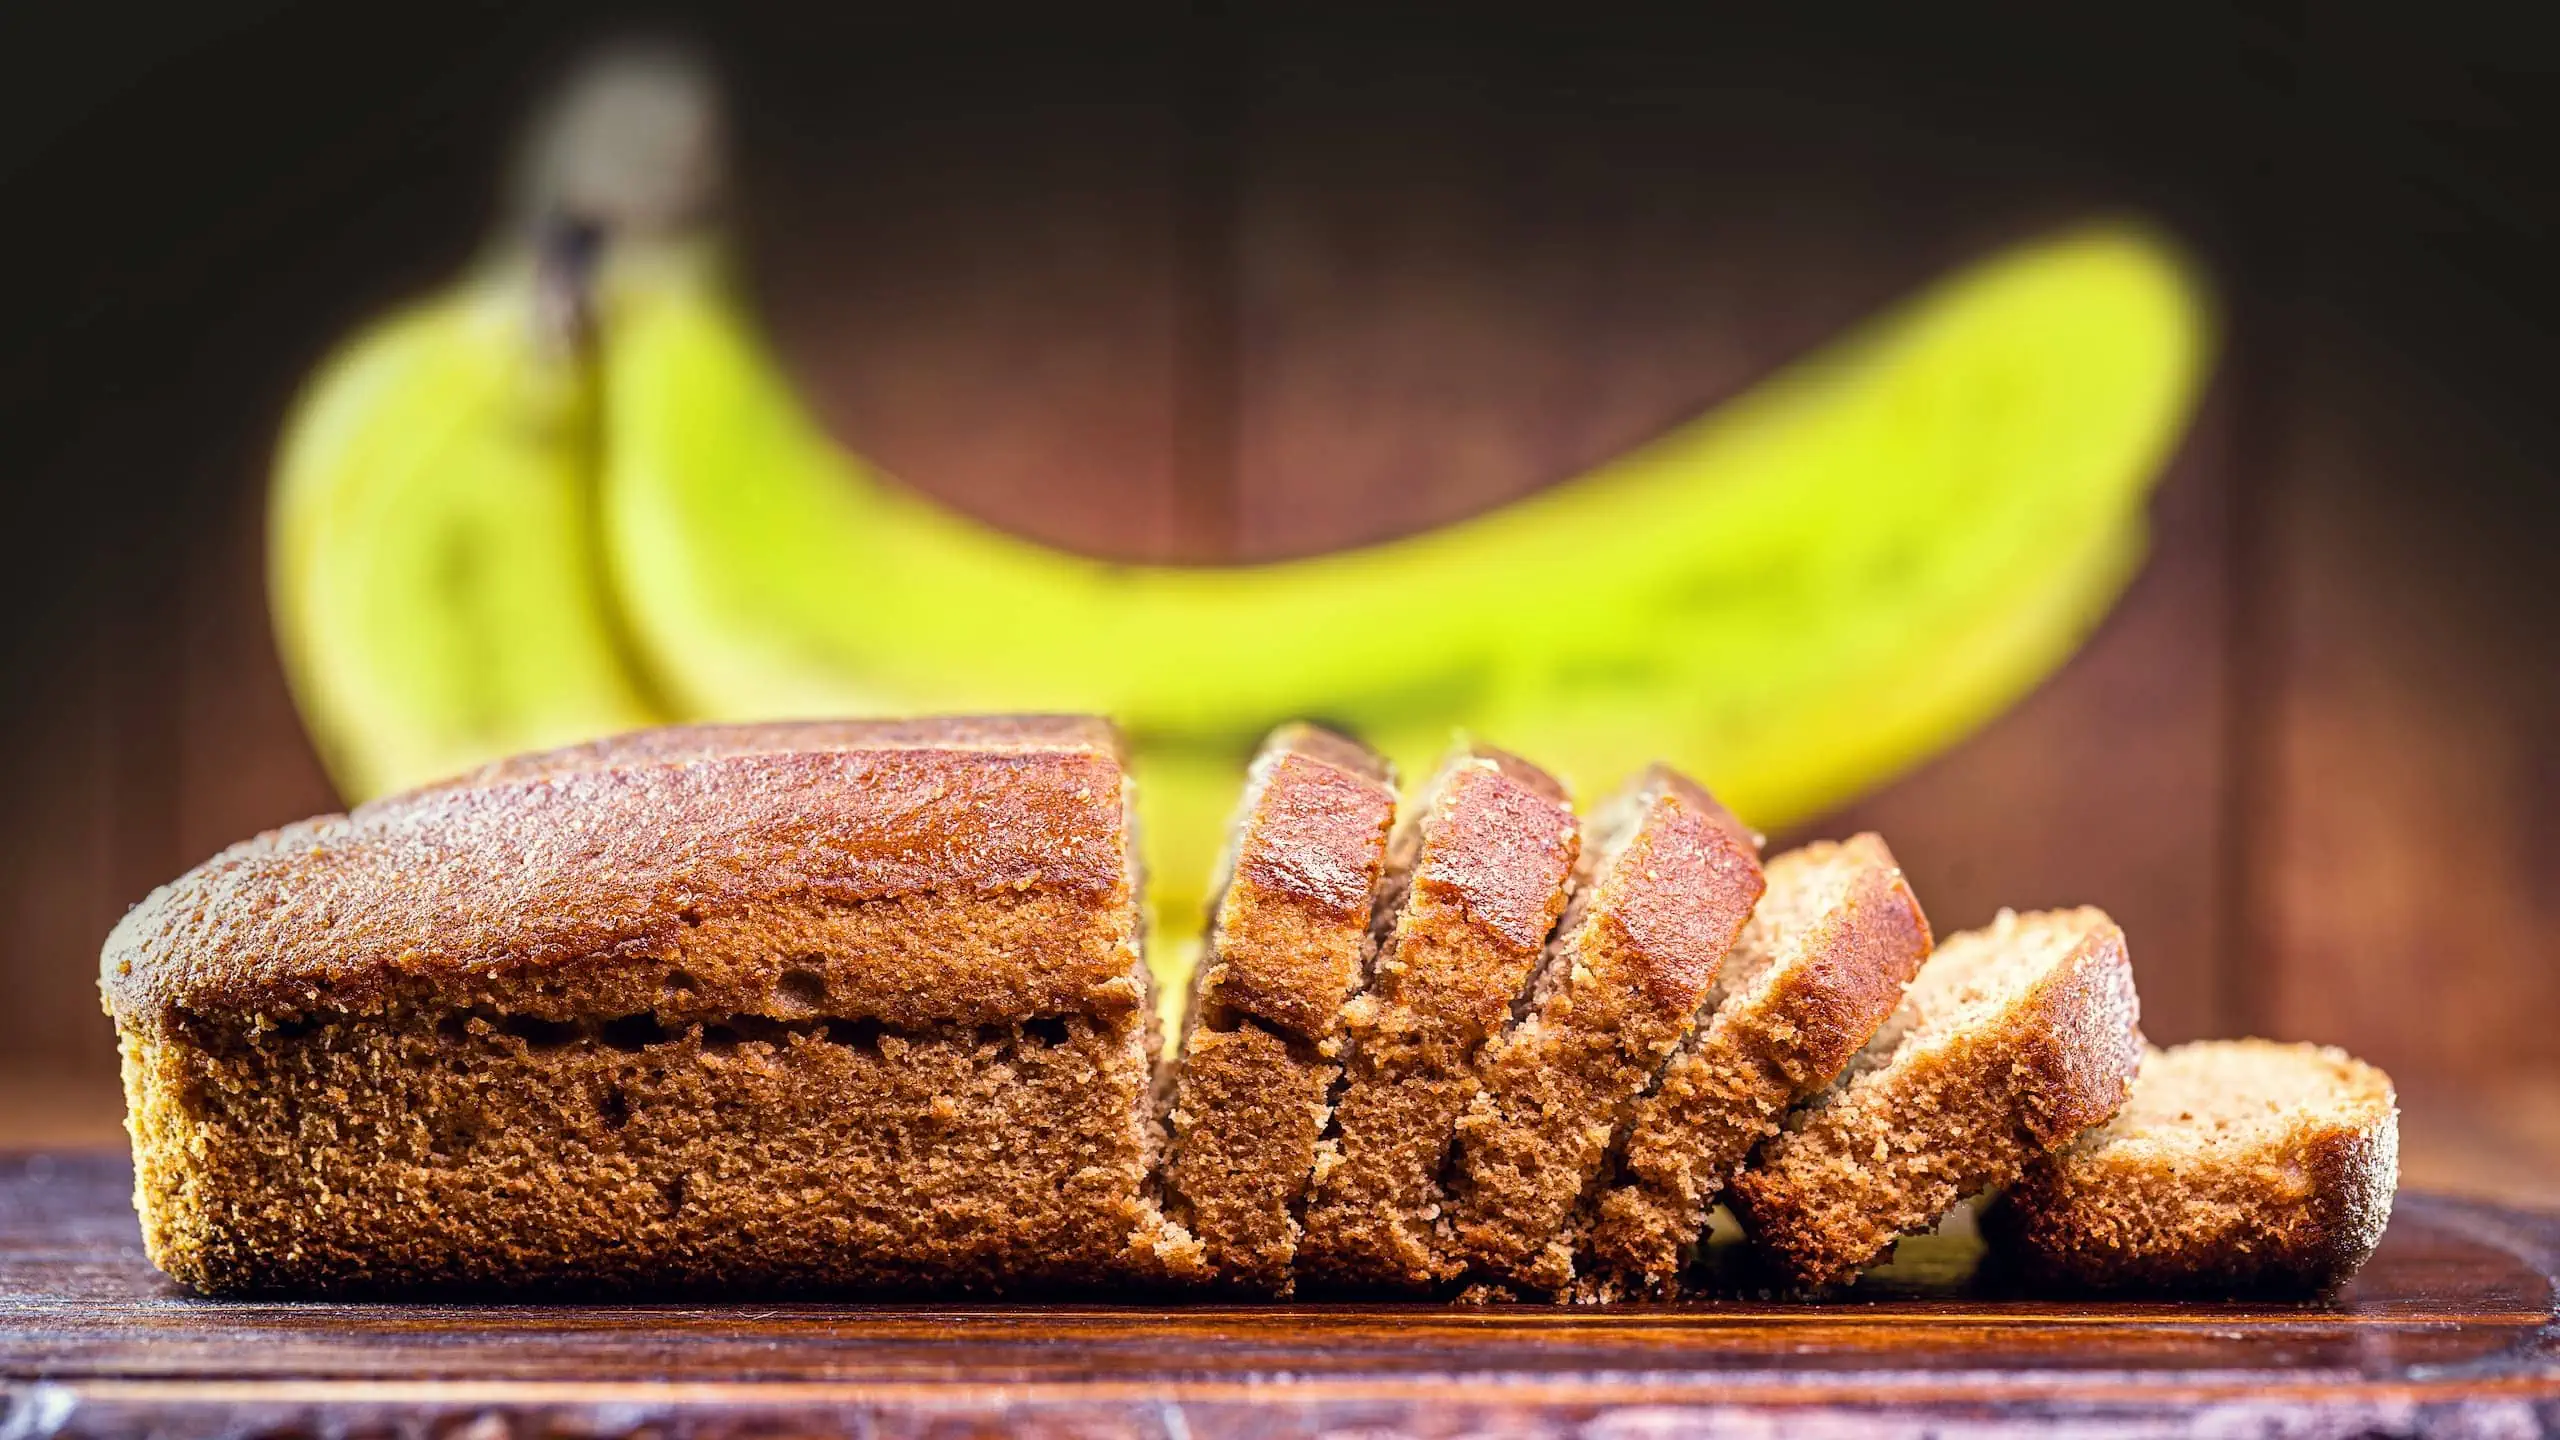 Gluten-free banana bread simply